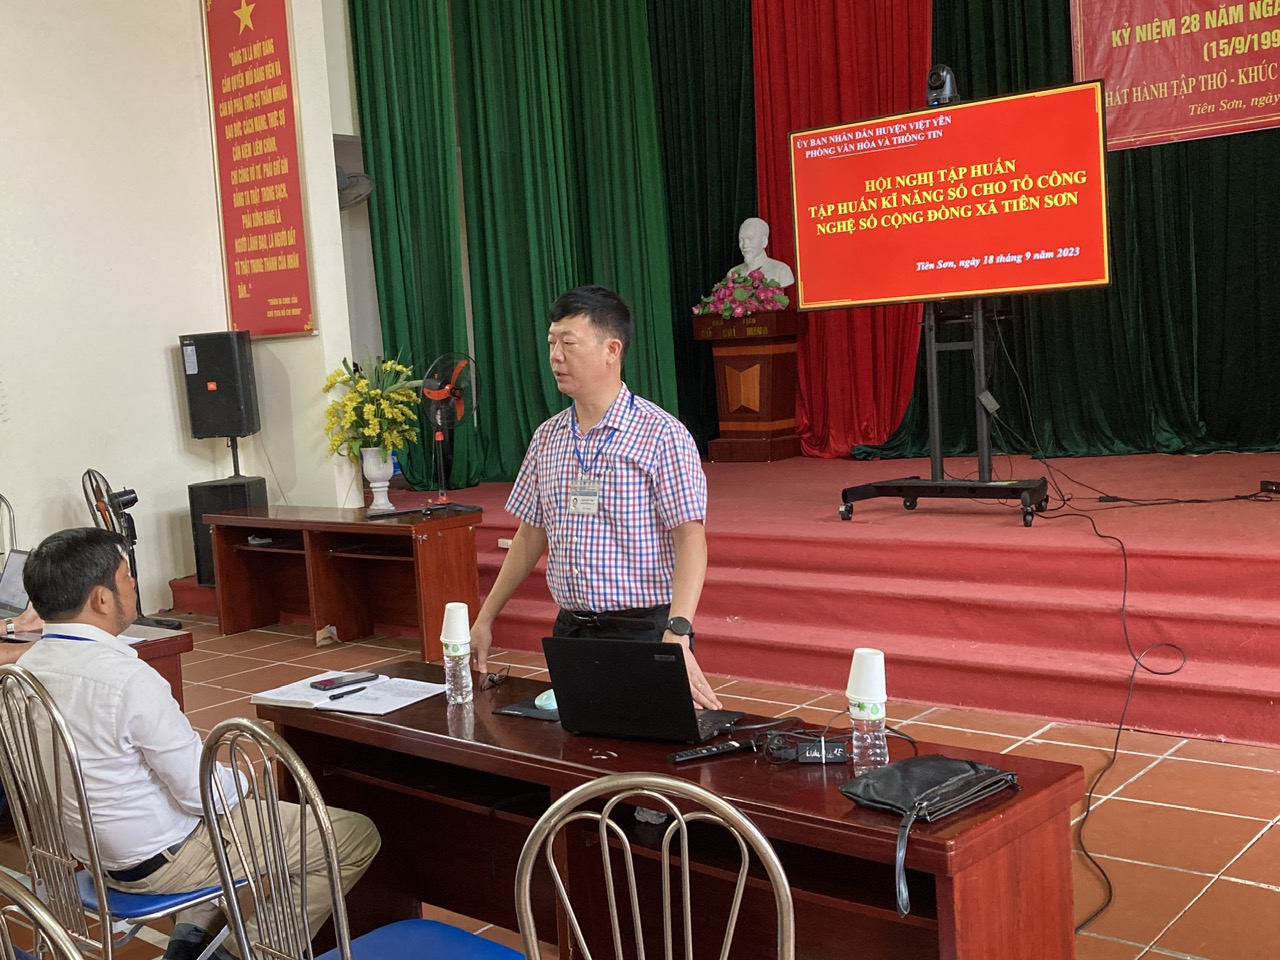 Đồng chí Trần Hữu Bình - Phó trưởng Phòng Văn hóa và Thông tin phát biểu tại hội nghị tập huấn